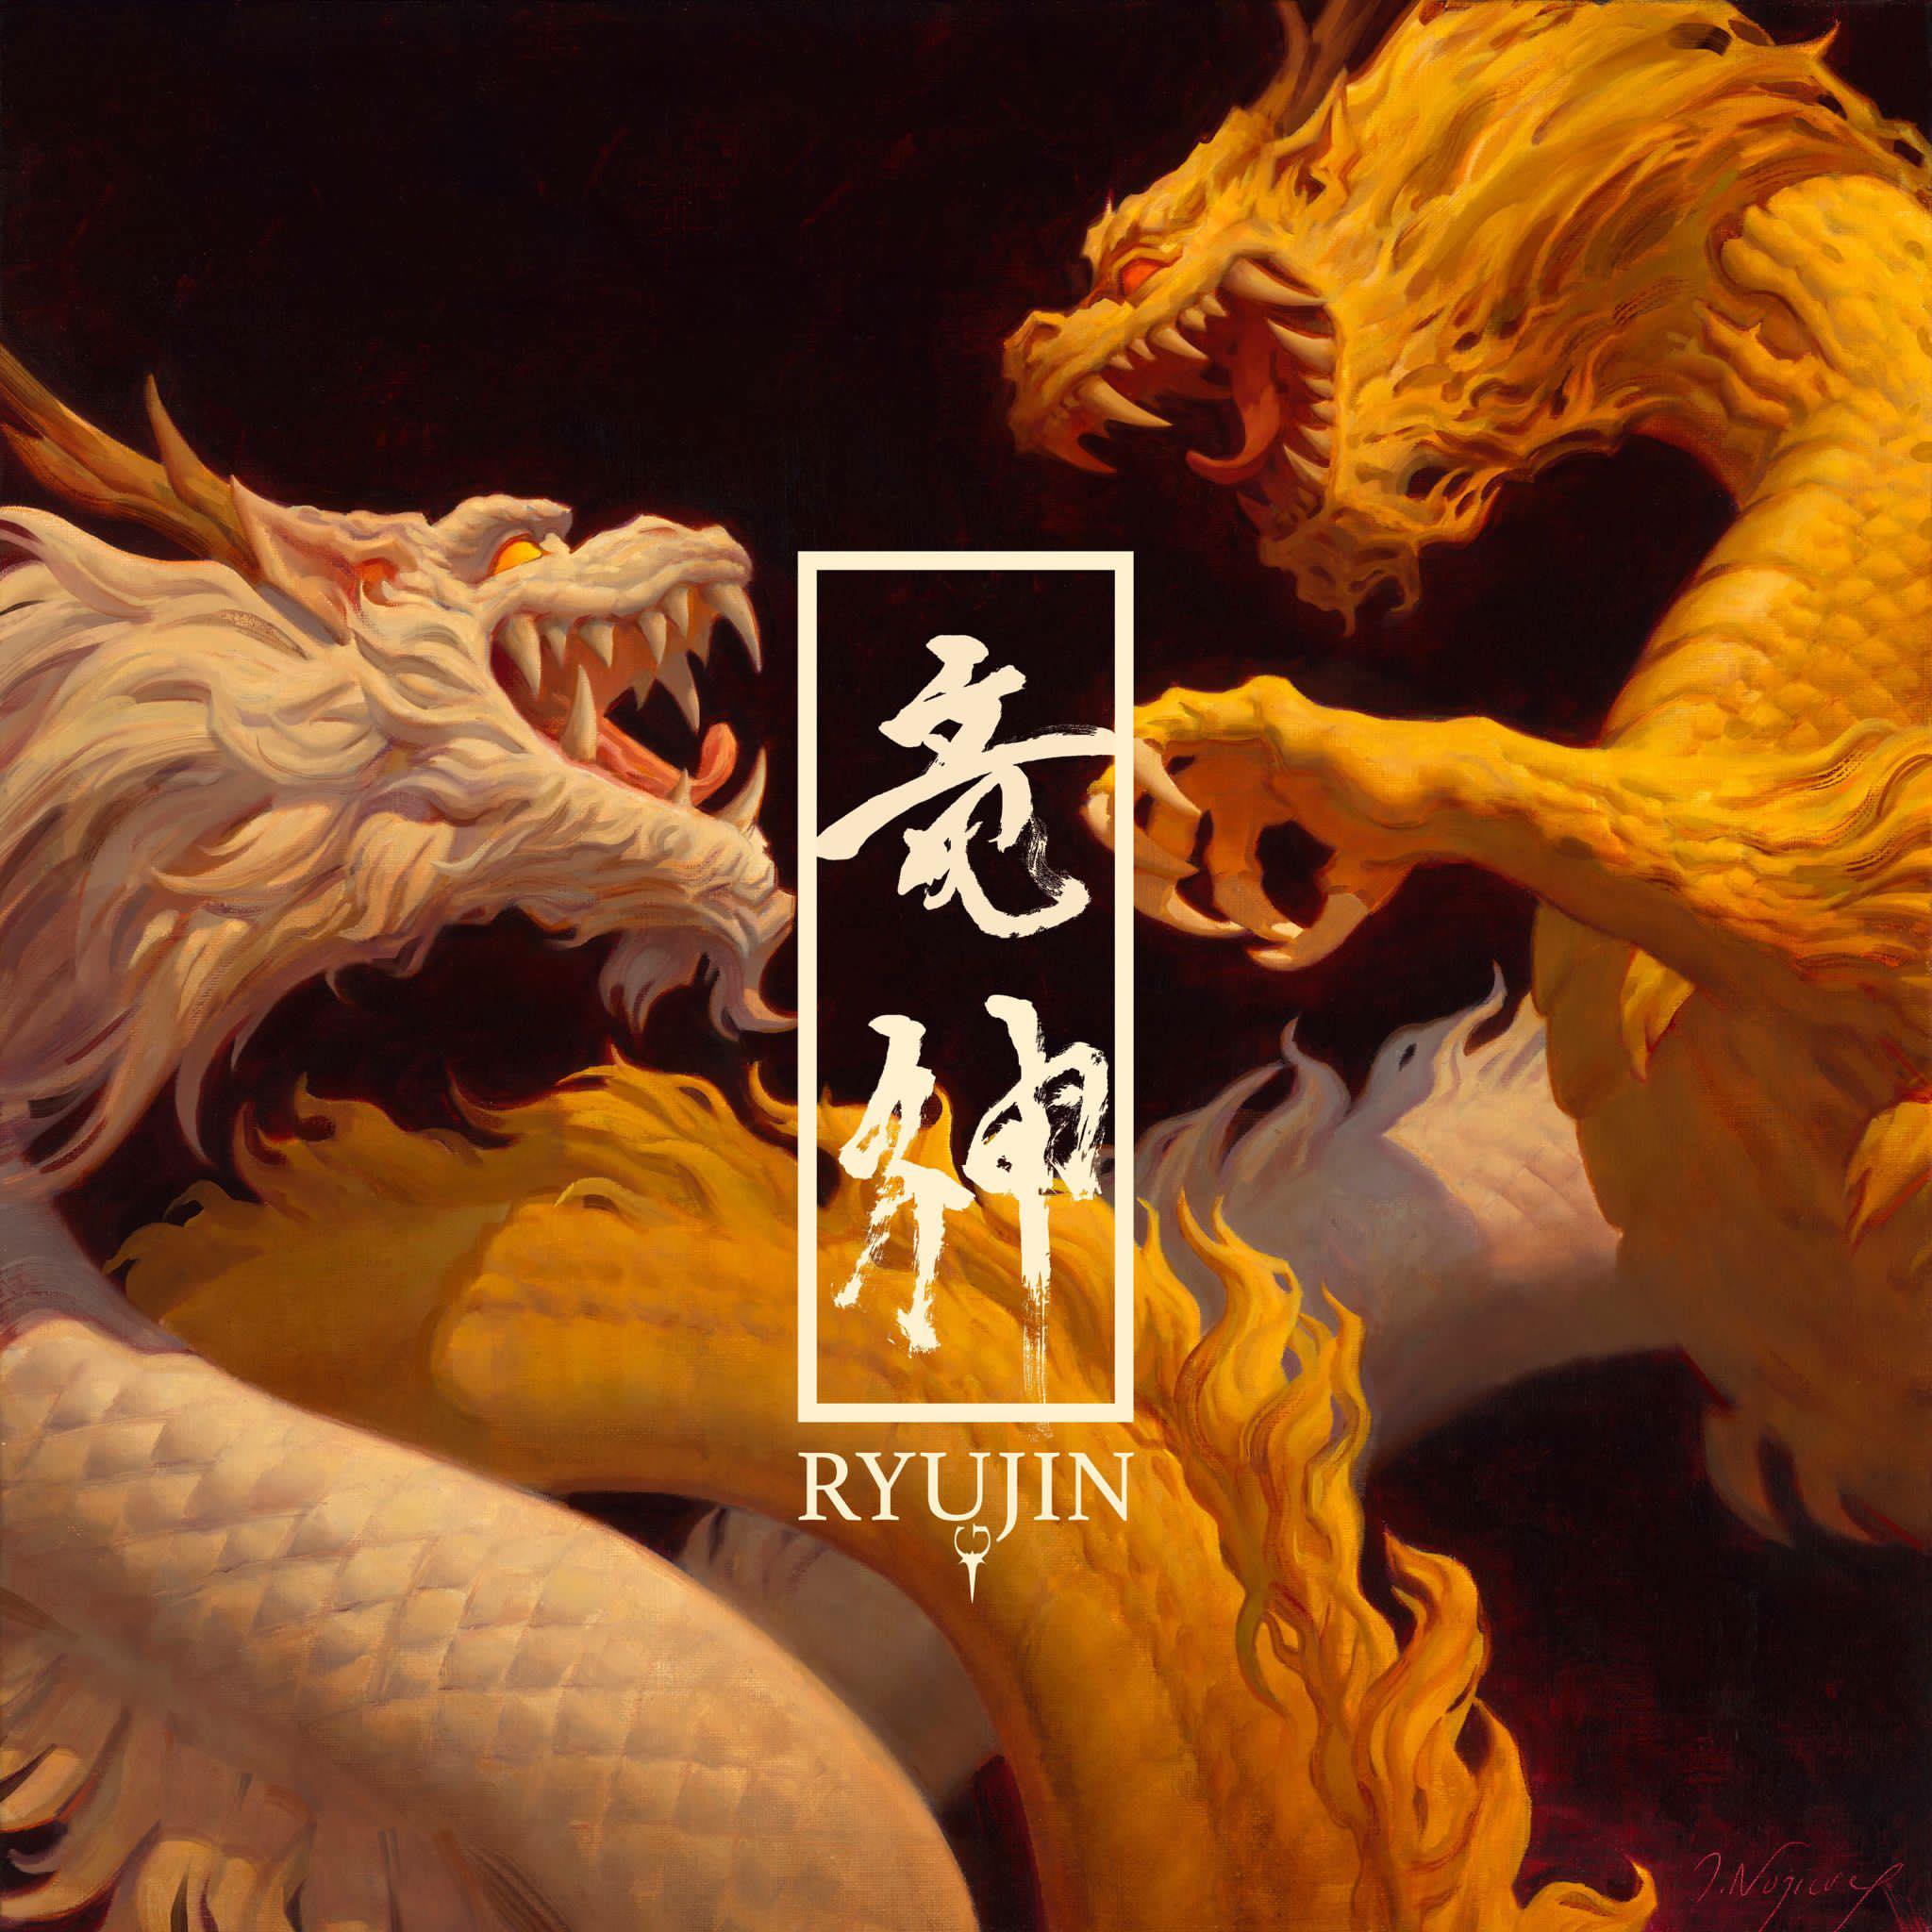 Portada del disco debut de Ryujin